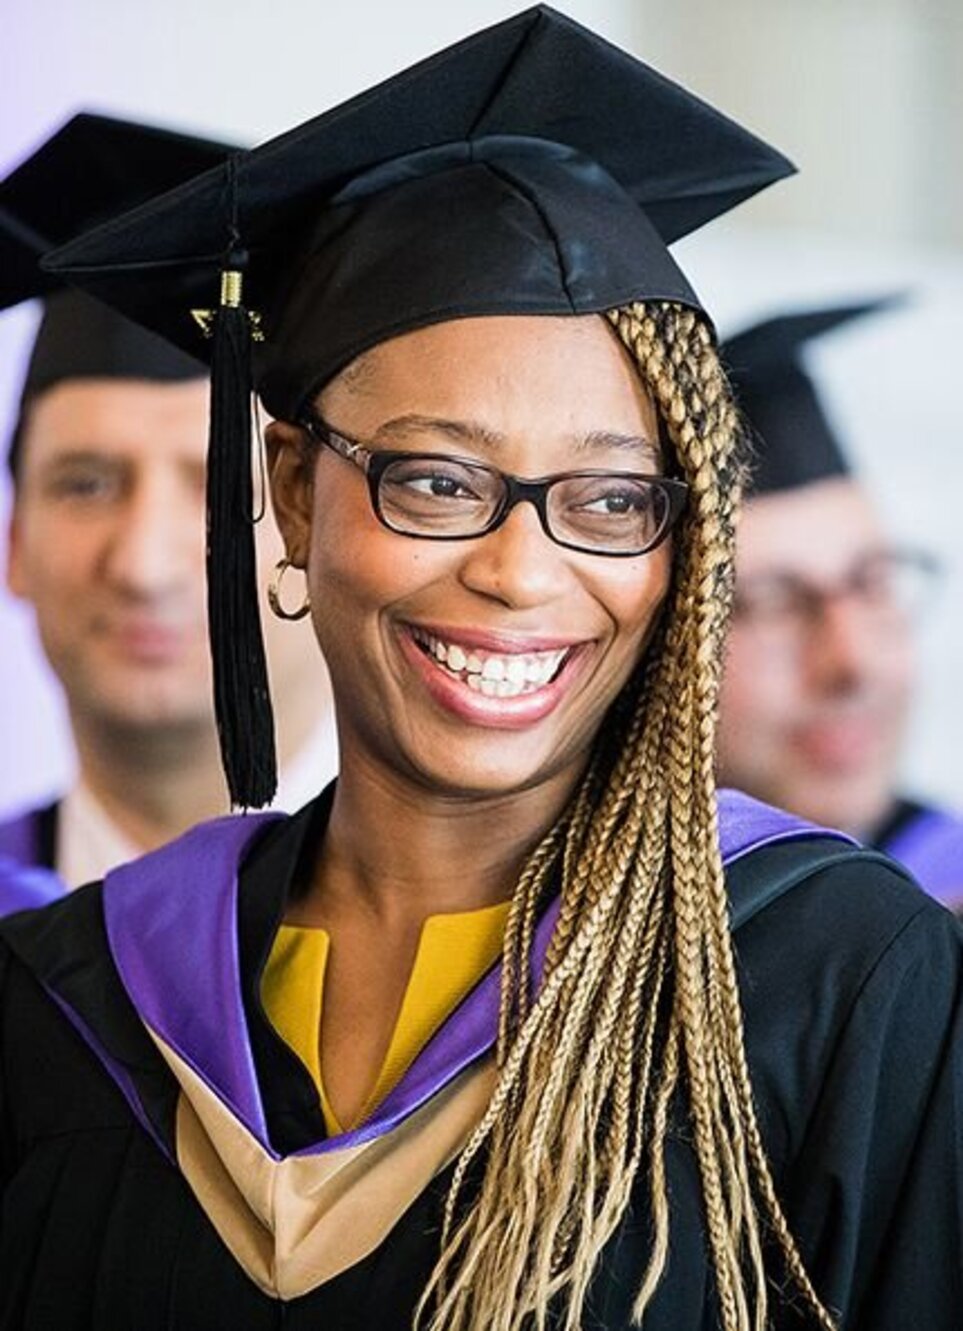 Smiling woman in graduation attire